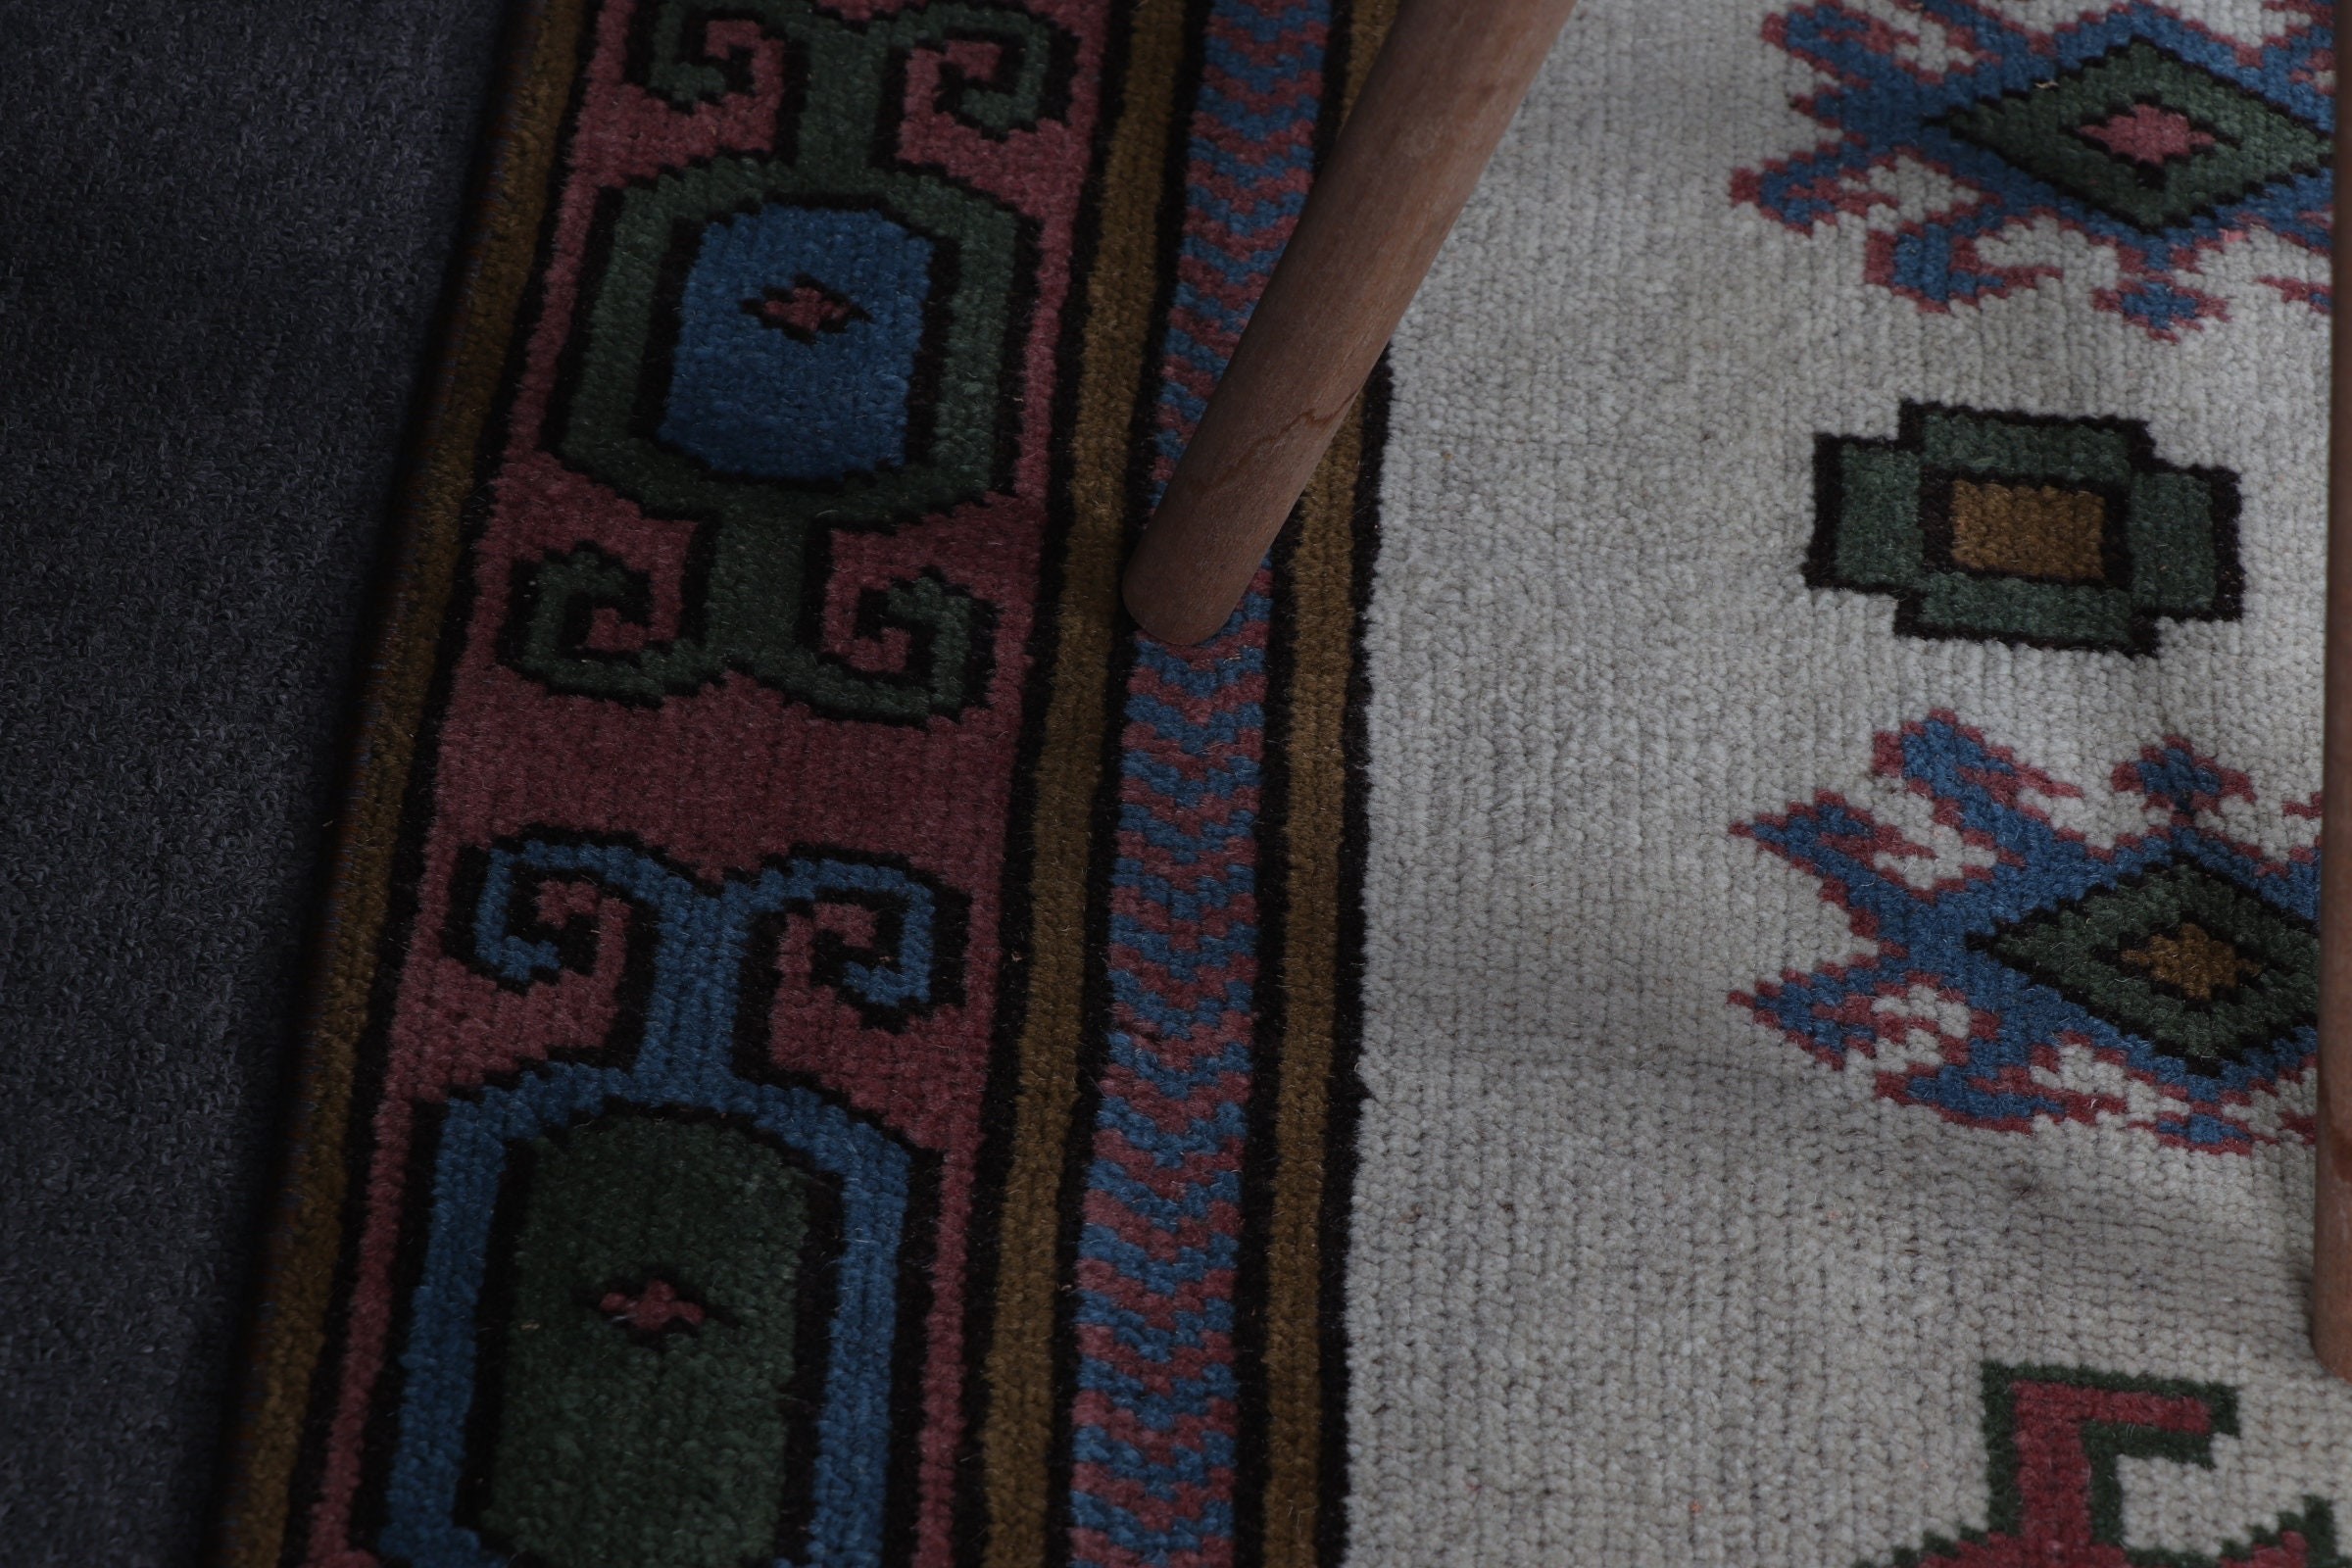 Turkish Rug, Rugs for Dining Room, Beige Floor Rug, Vintage Decor Rug, Vintage Rug, Moroccan Rugs, 5x7.1 ft Area Rugs, Bedroom Rugs